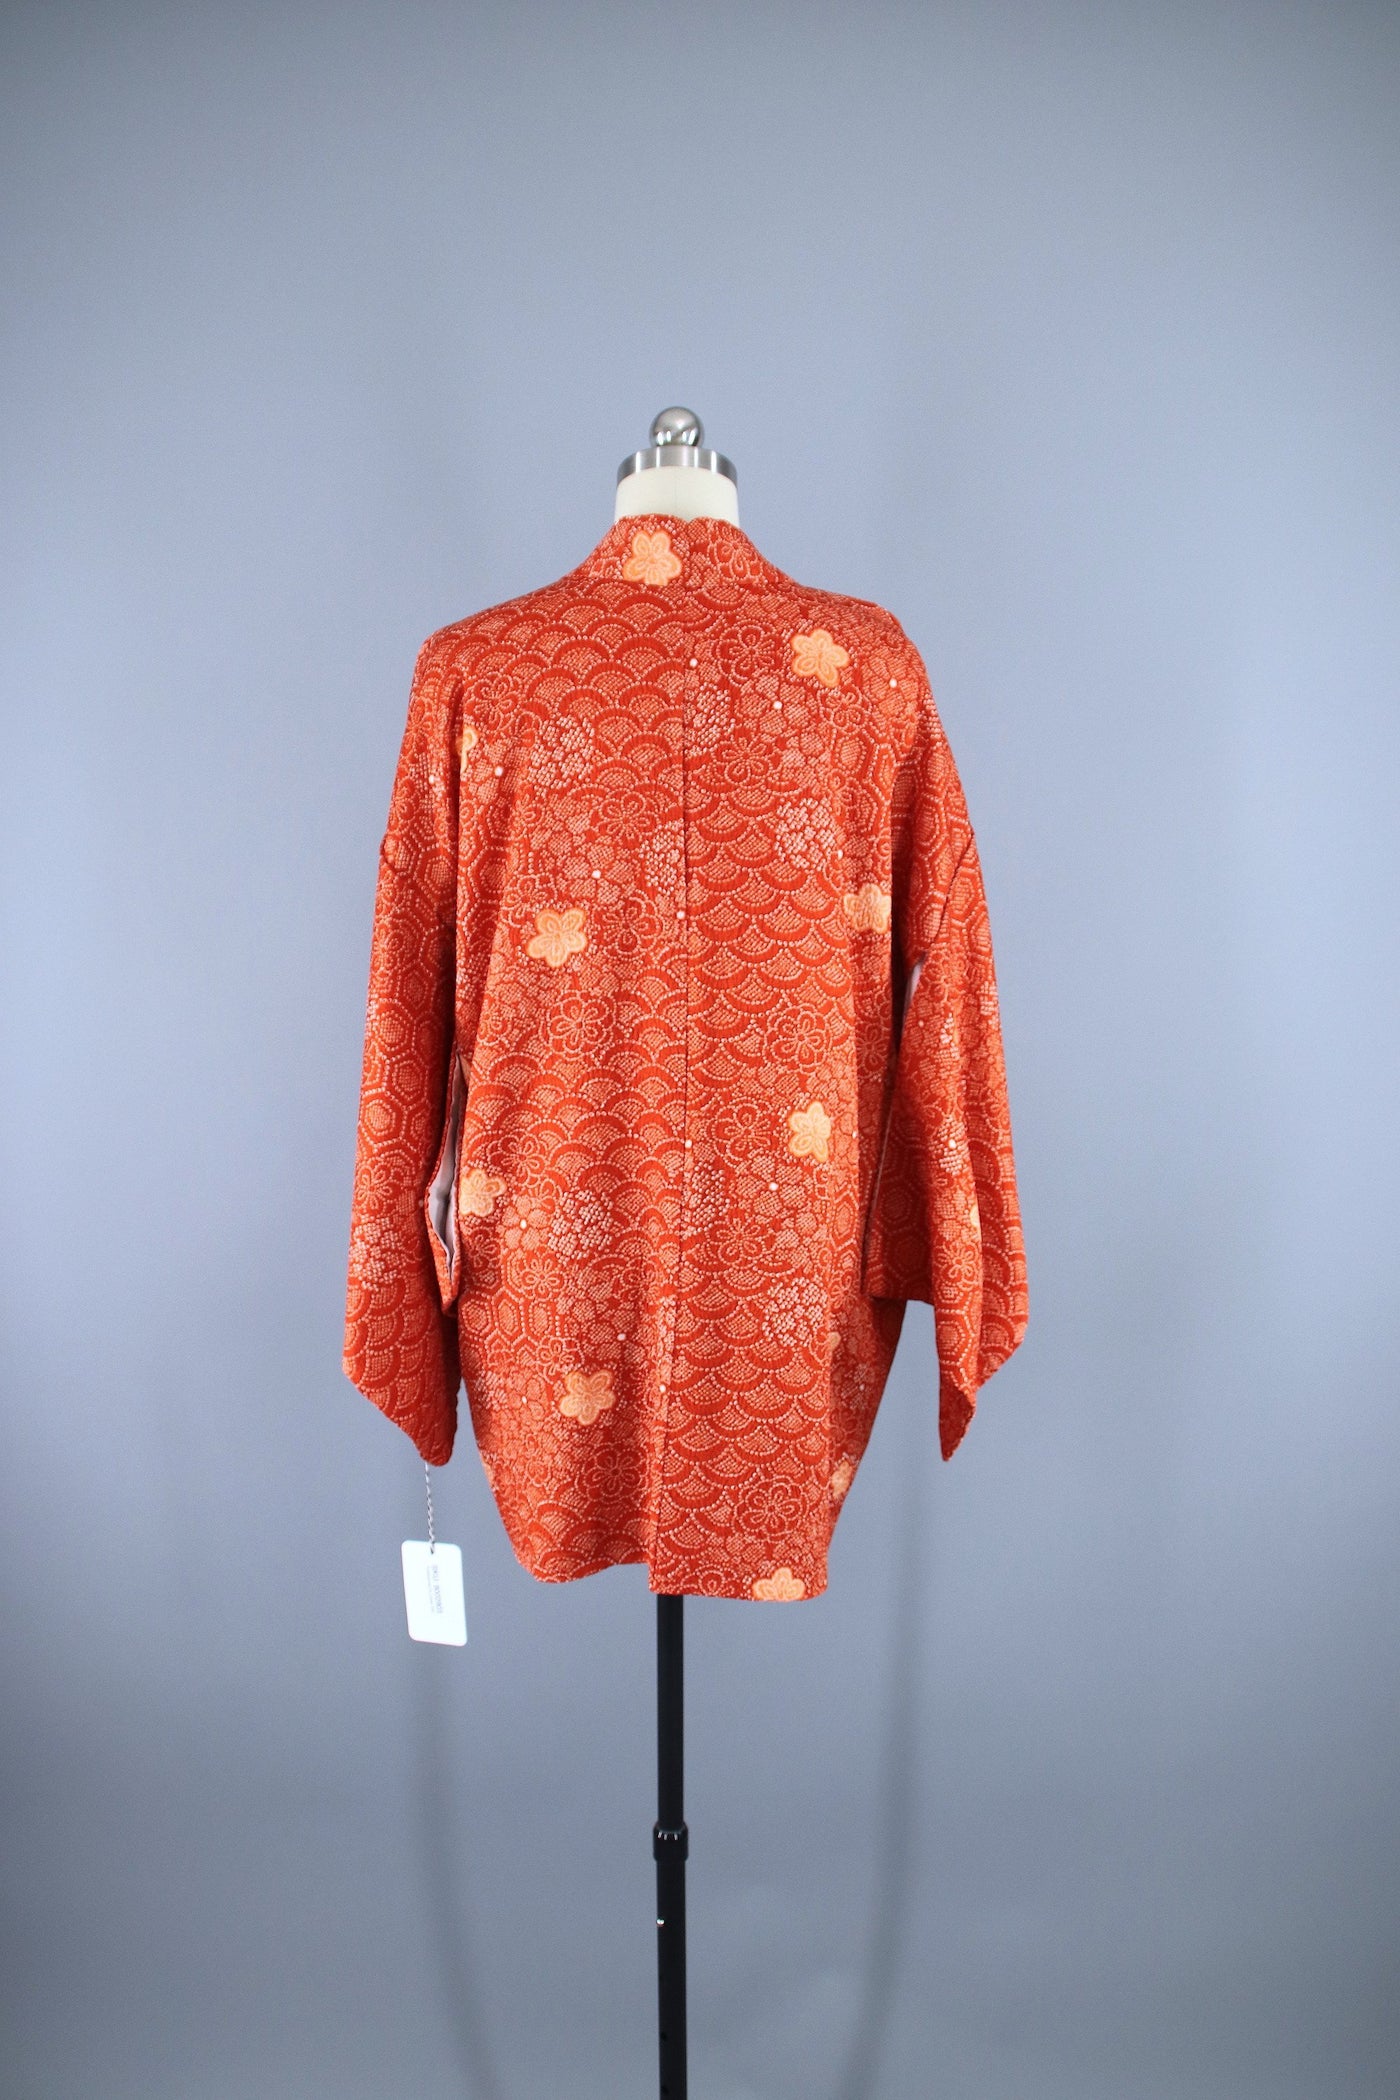 1980s Vintage Haori Kimono Jacket Cardigan / Orange & White Shibori - ThisBlueBird